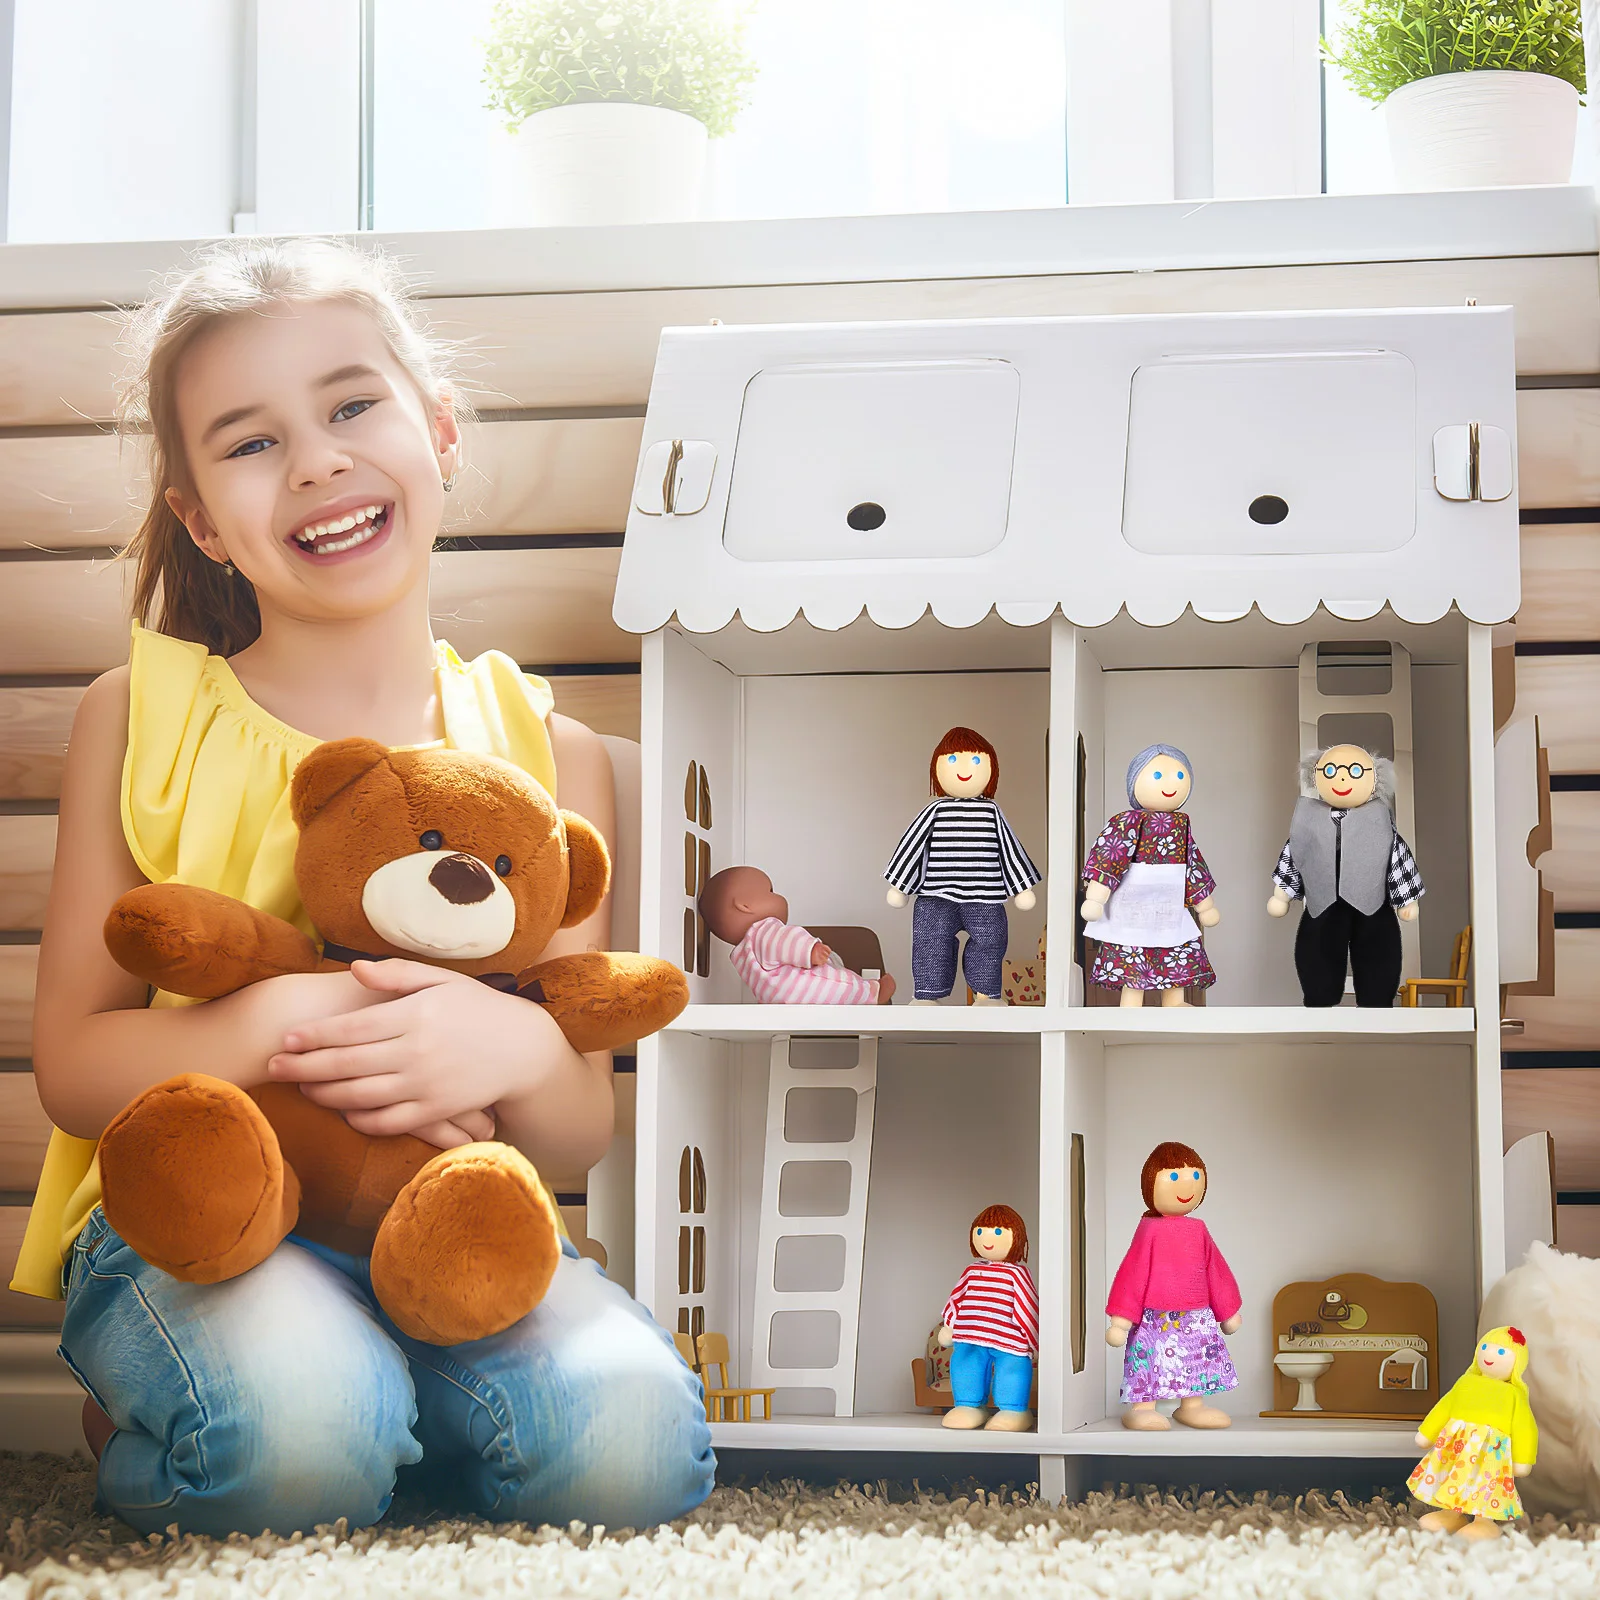 6 יח ' מיקרו צעצועים המשפחה בובות Playset בית עץ דמויות אנשים פנים הילד - 5